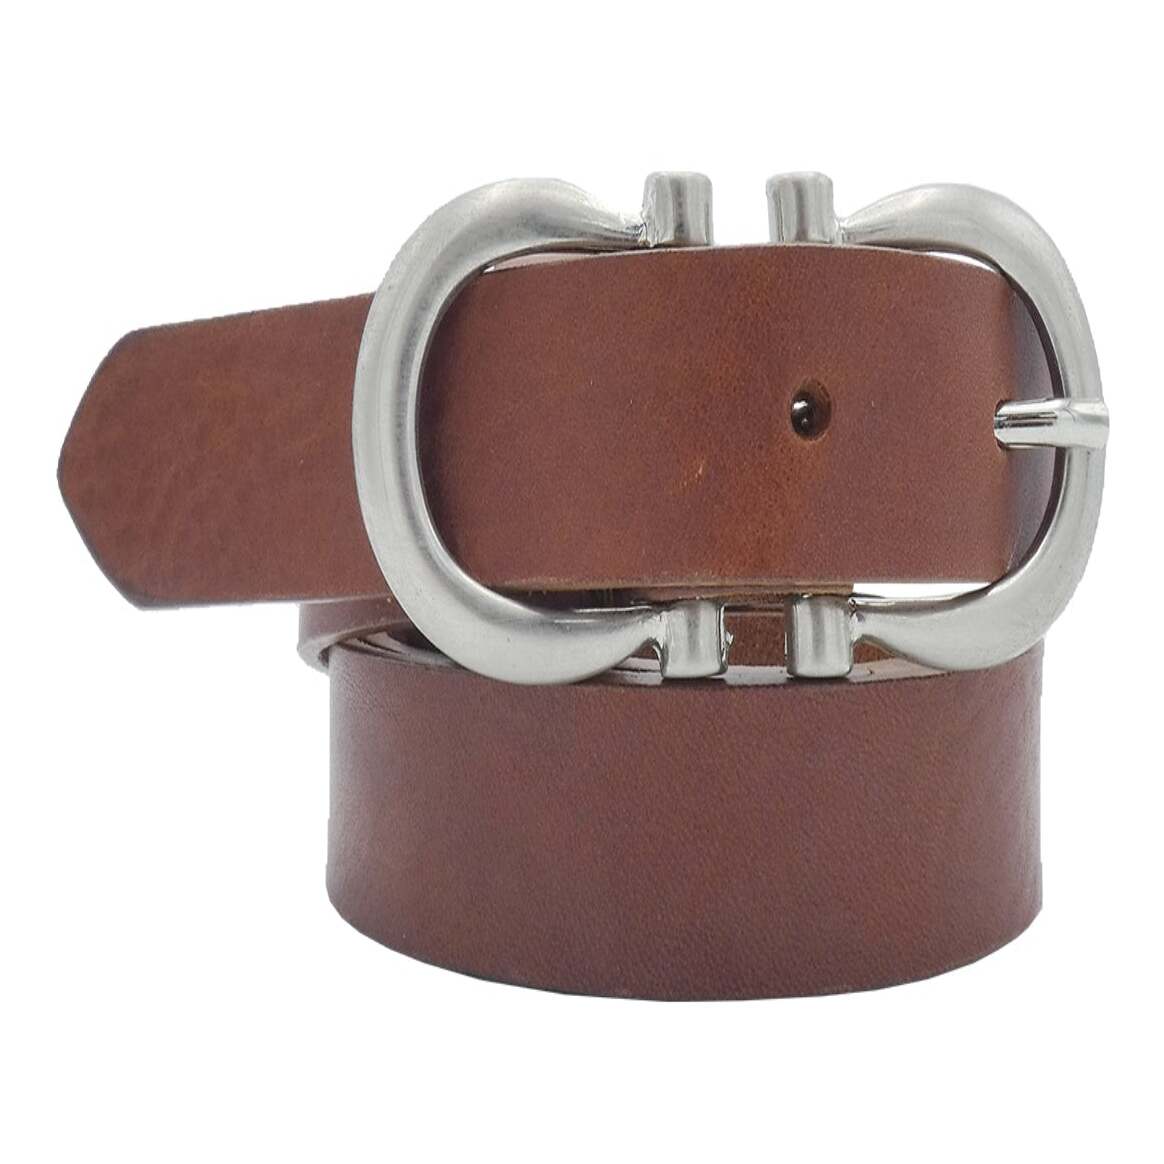 2.5cm Degas leather belt with satin nickel zamak buckle